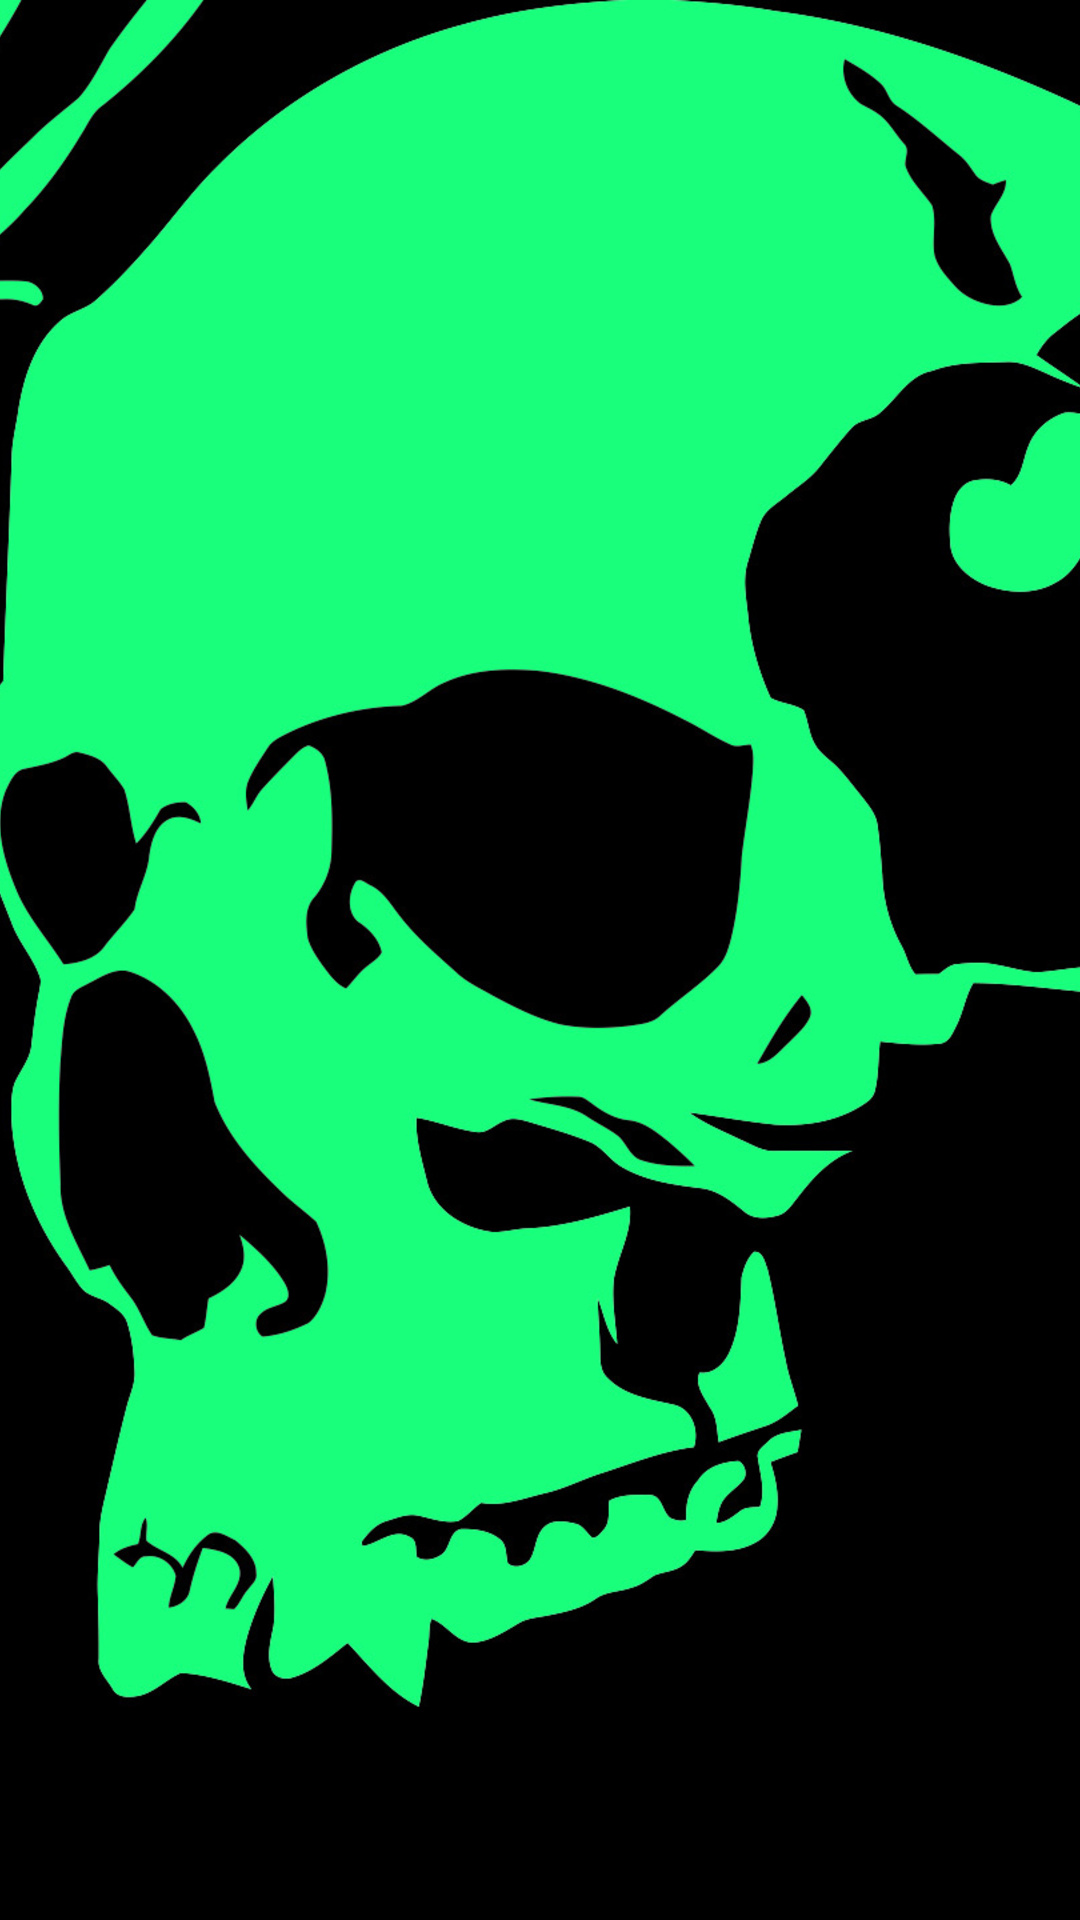 Green Skull Wallpapers